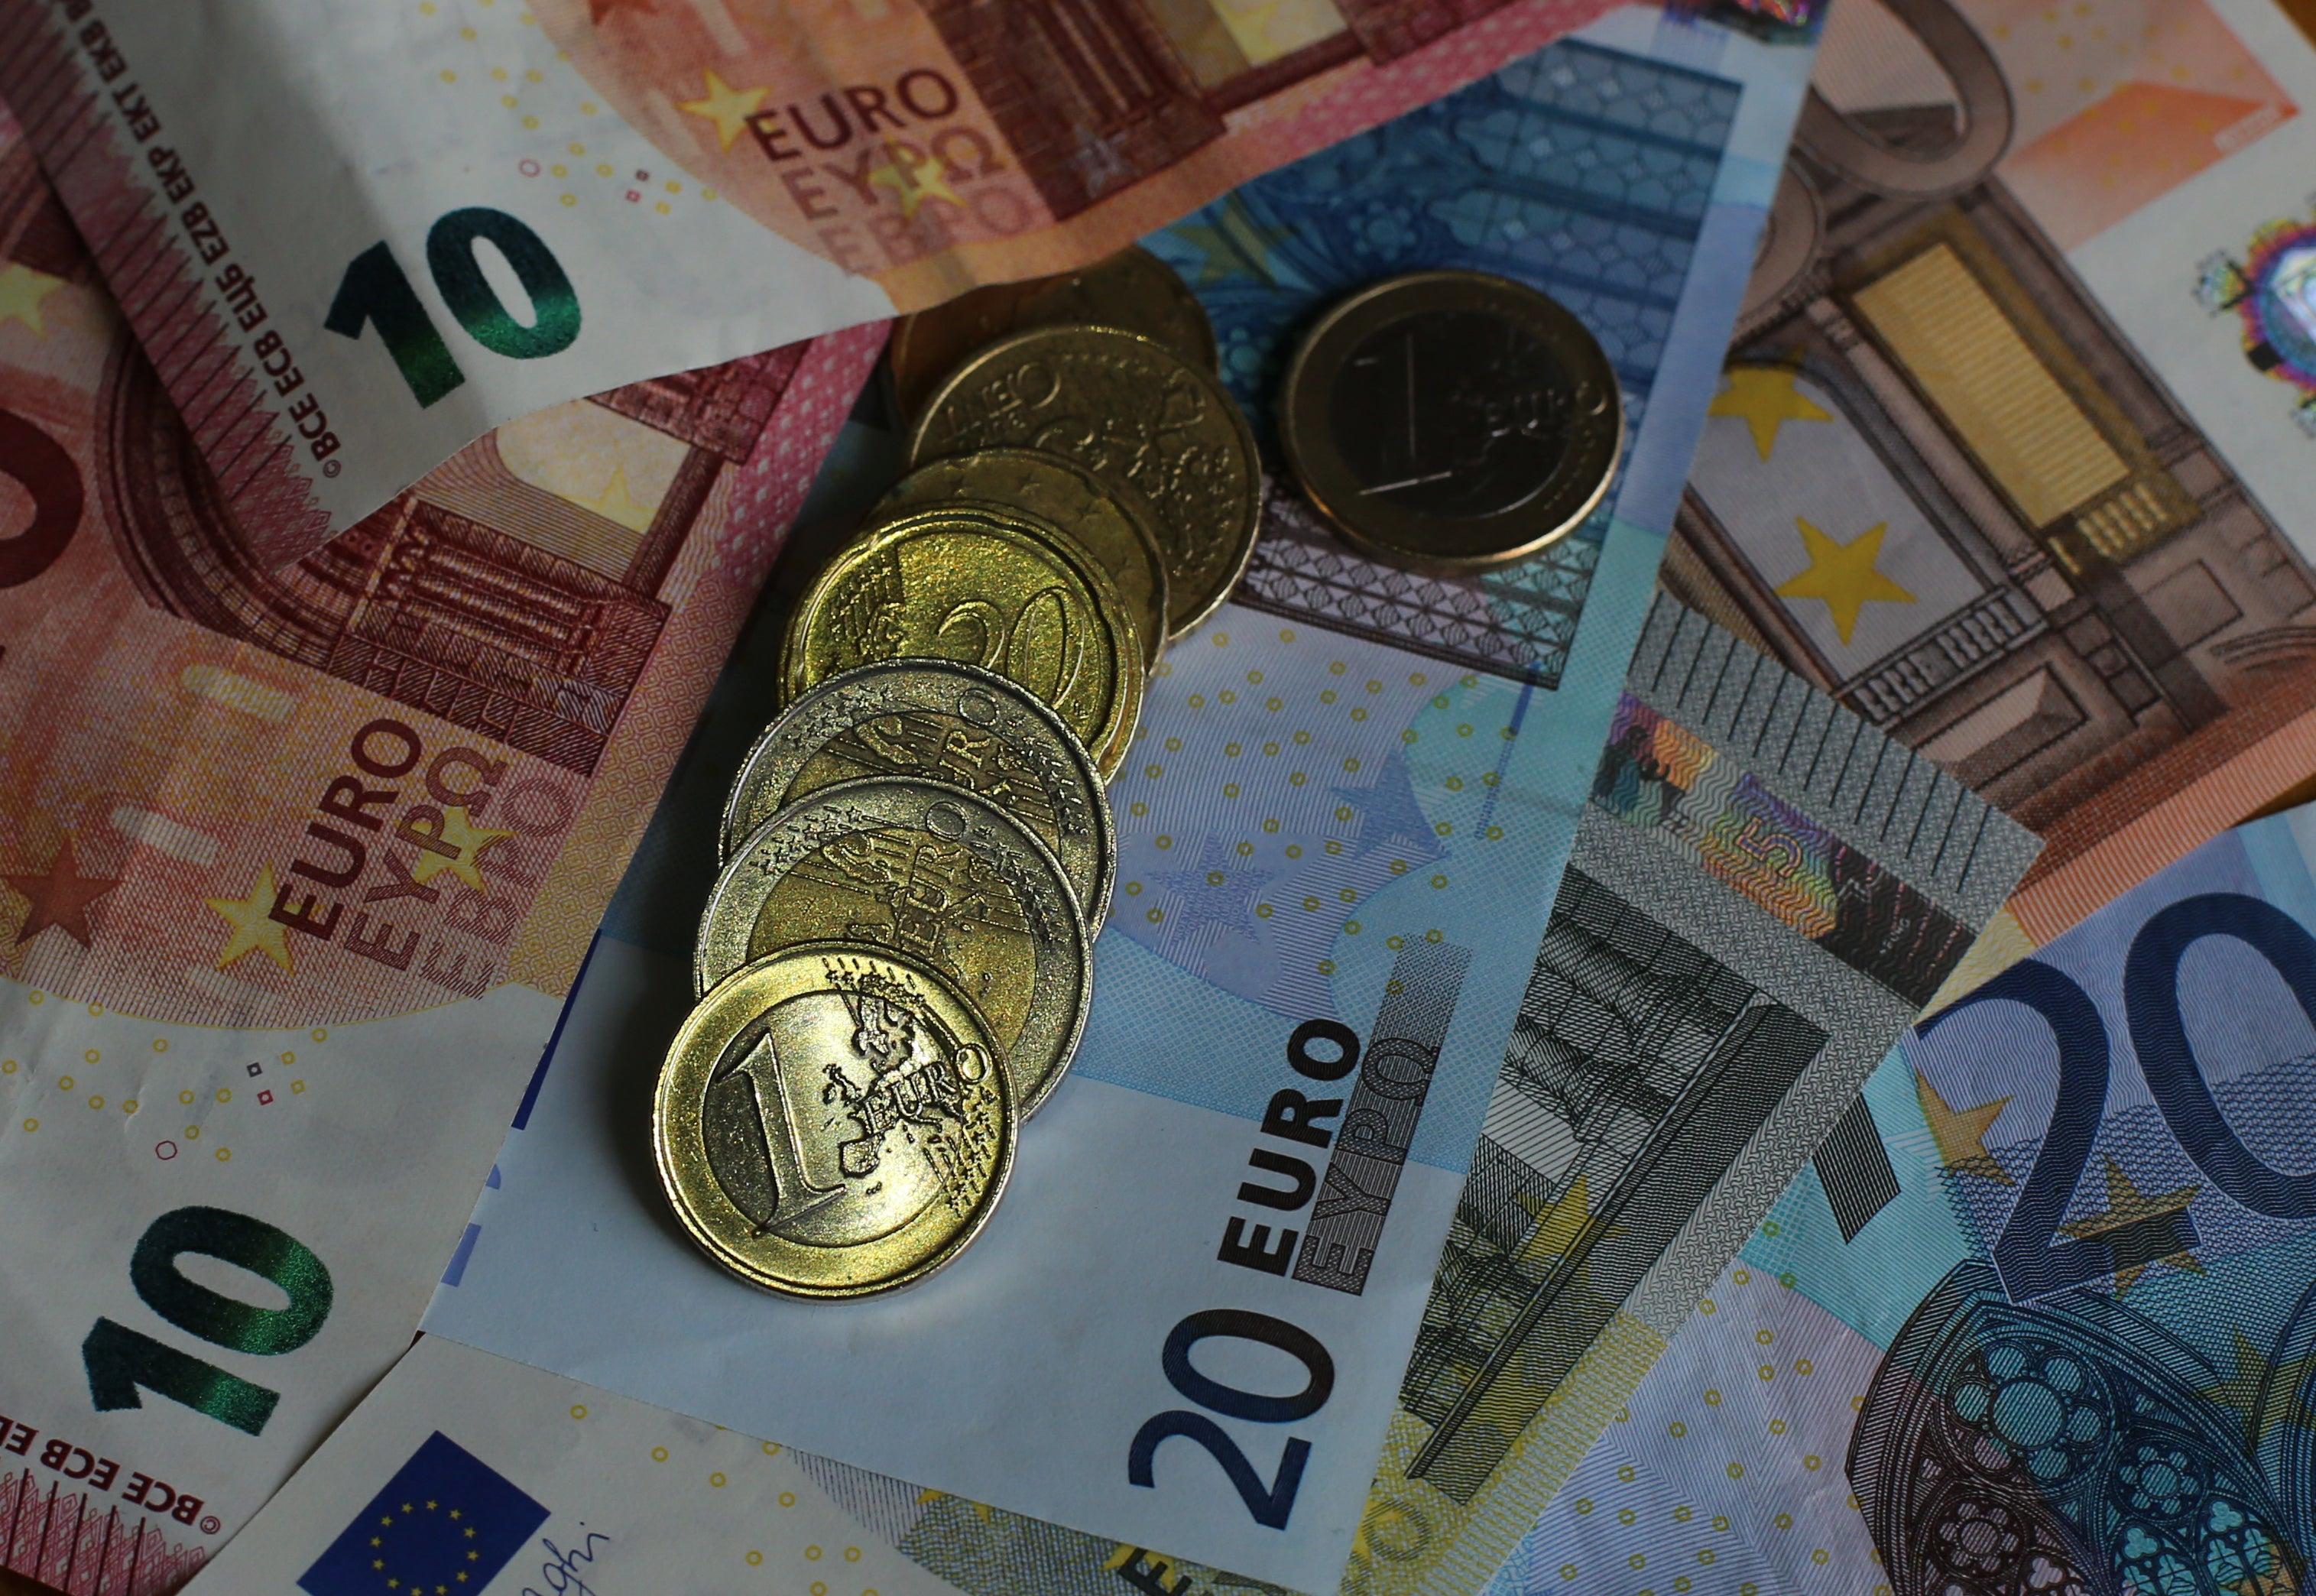 A collection Euro notes